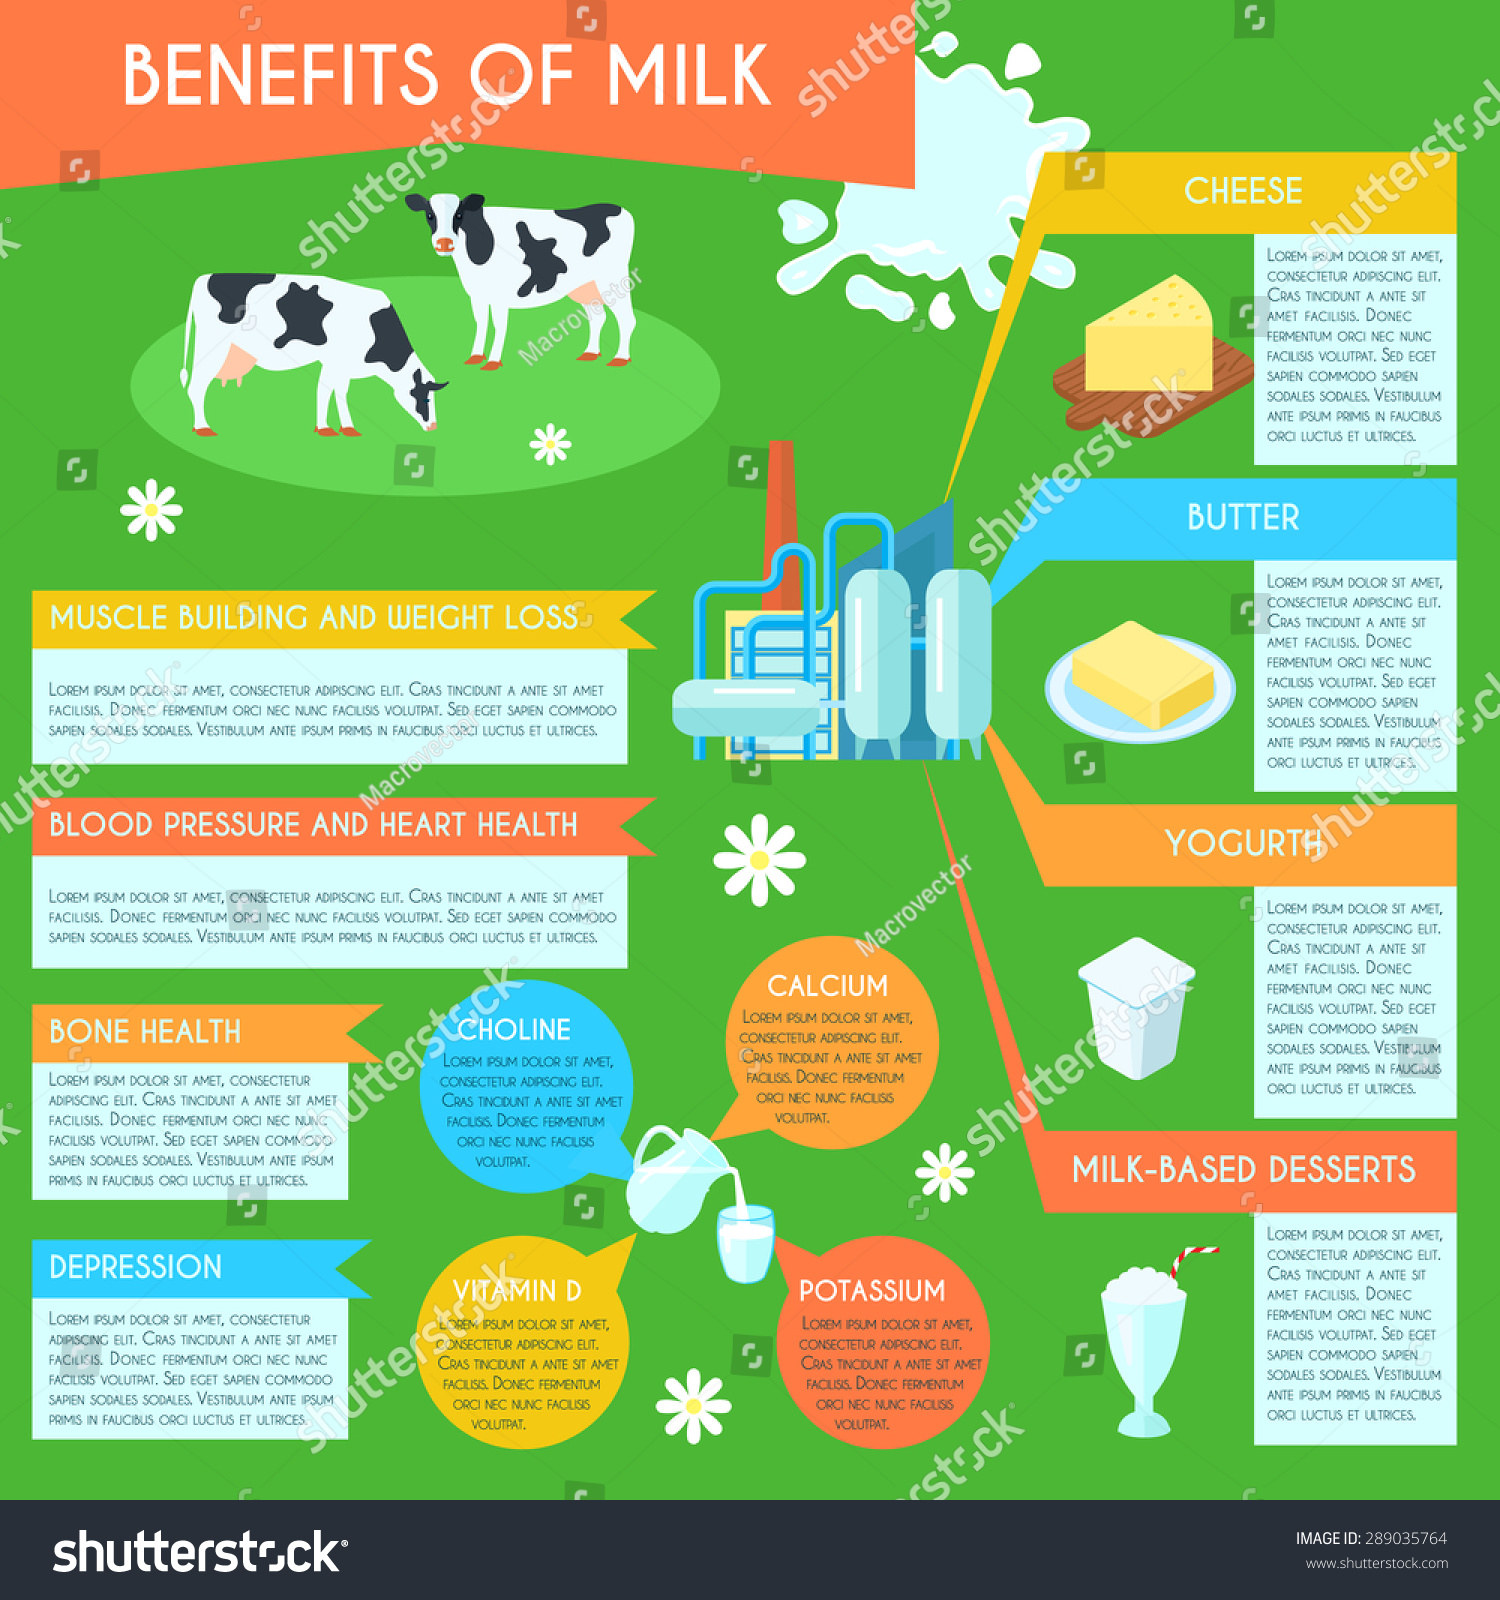 Benefits Of Low Fat Milk 90